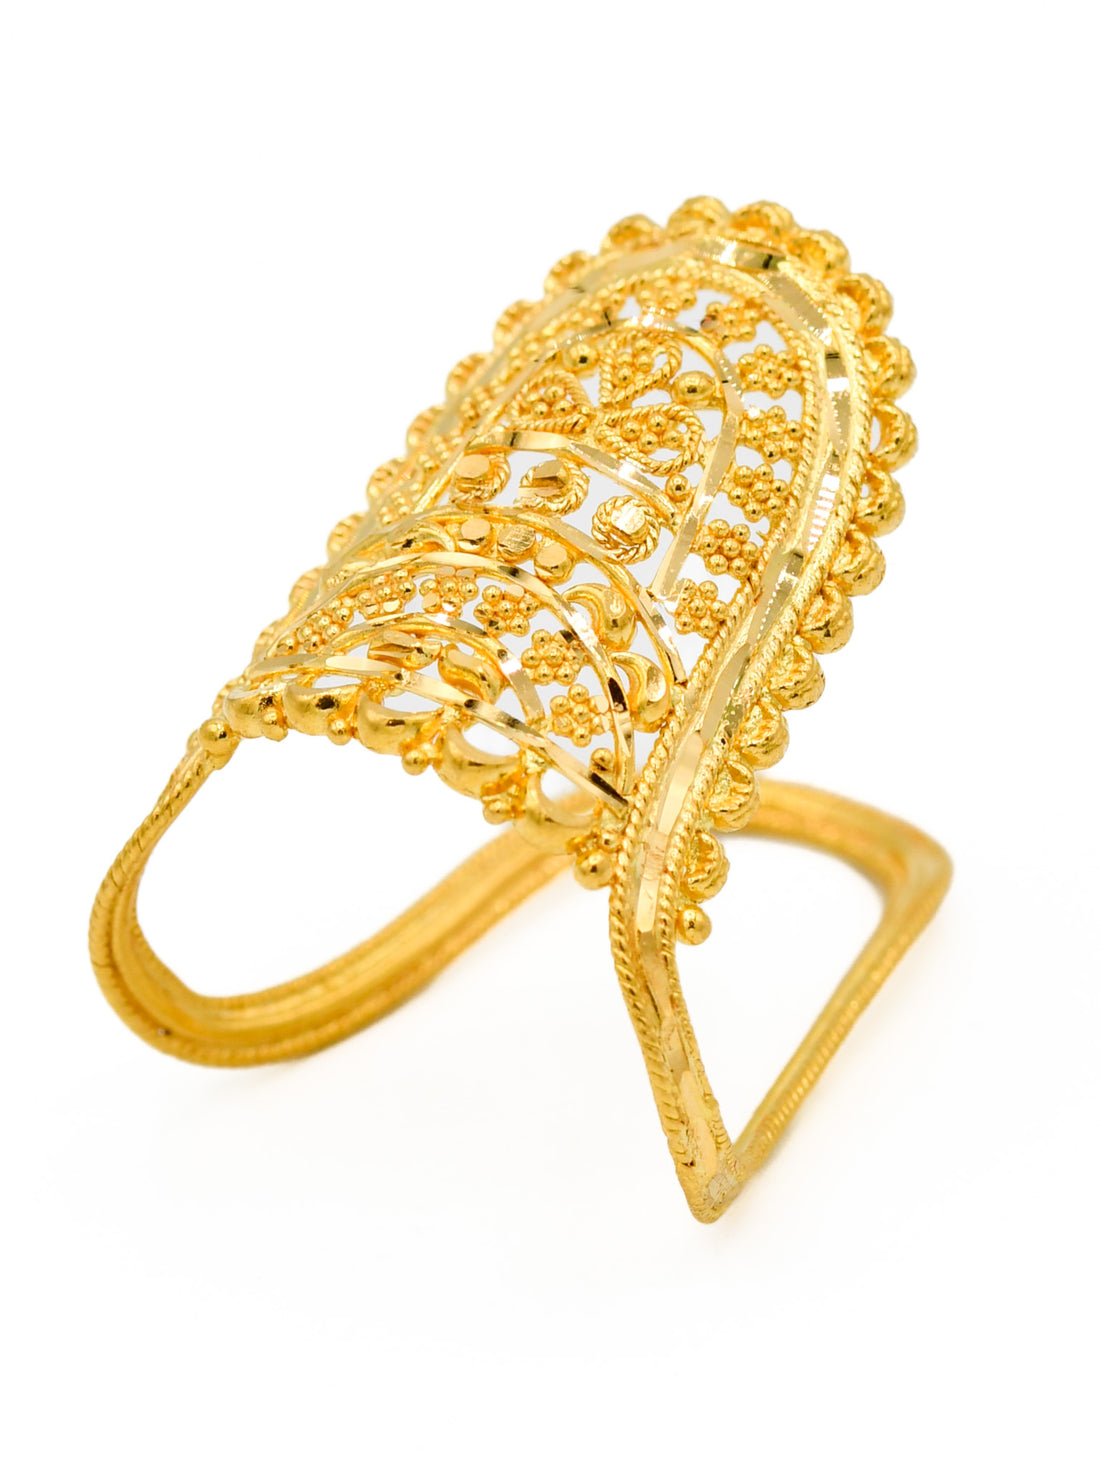 22ct Gold Filigree Ladies Ring